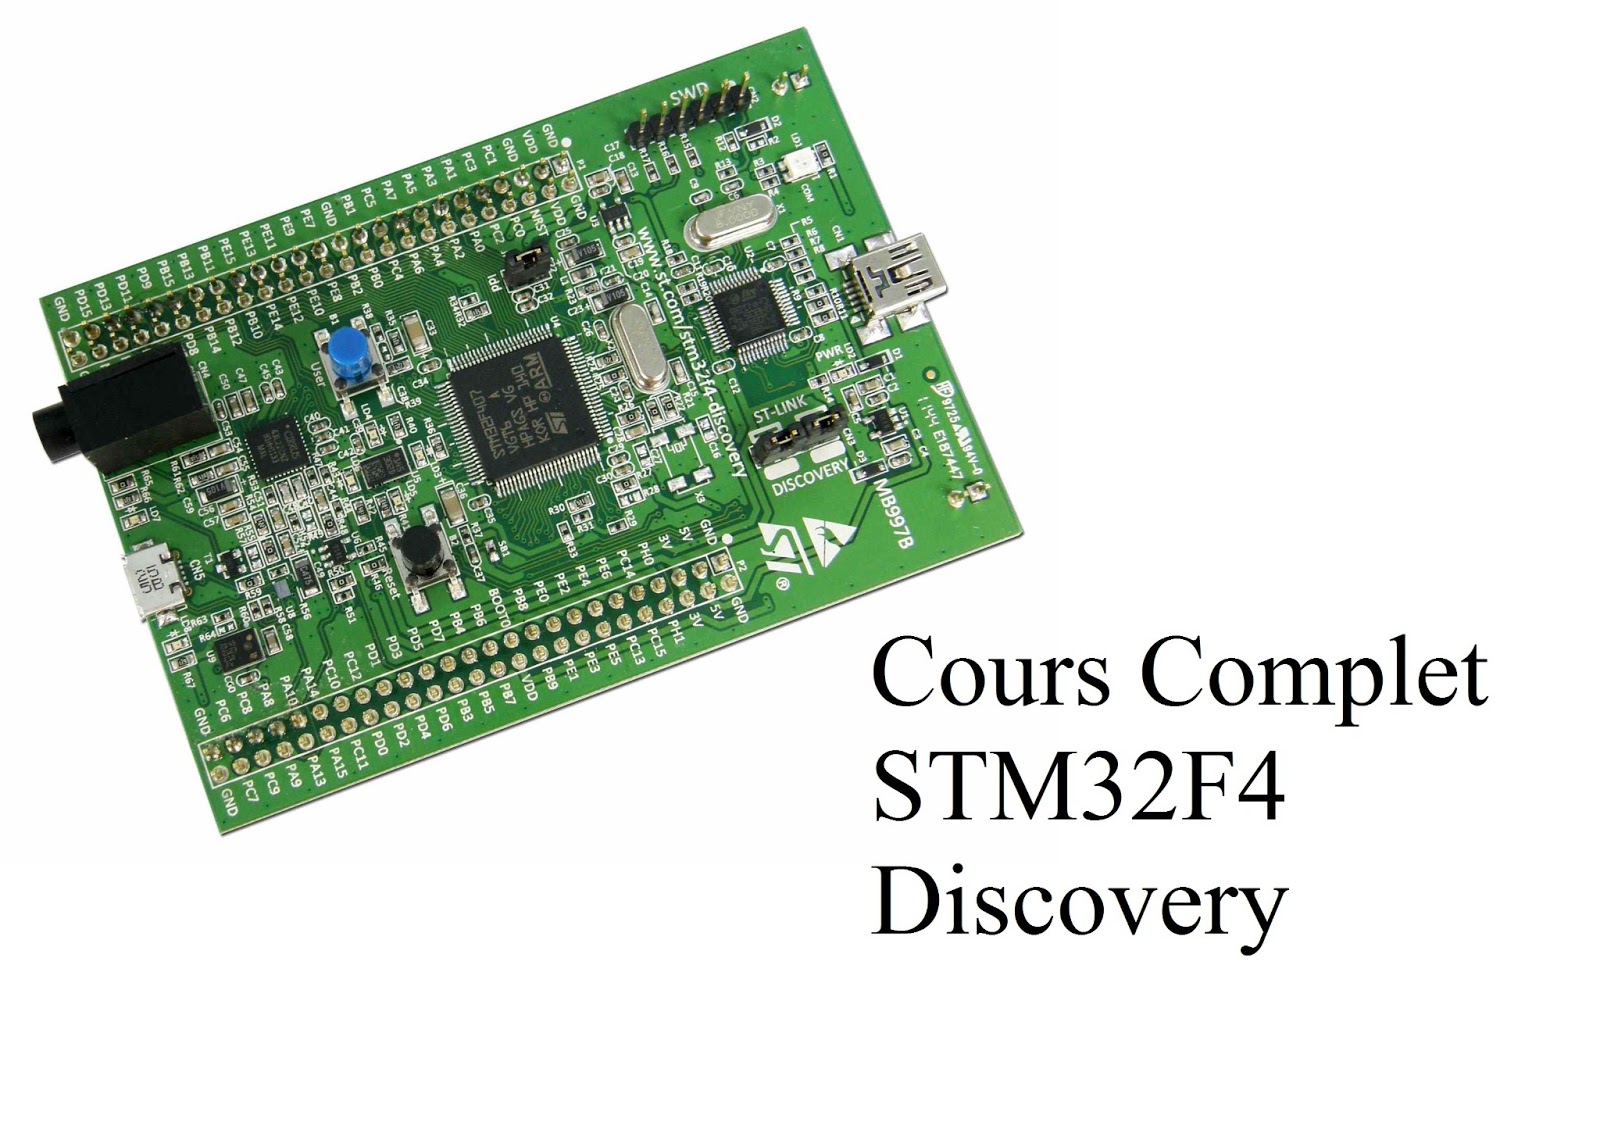 Stm32f4 Discovery. Stm32f407 Discovery. Stm32f407 Discovery Board. Stm32f769 Discovery. Discover f